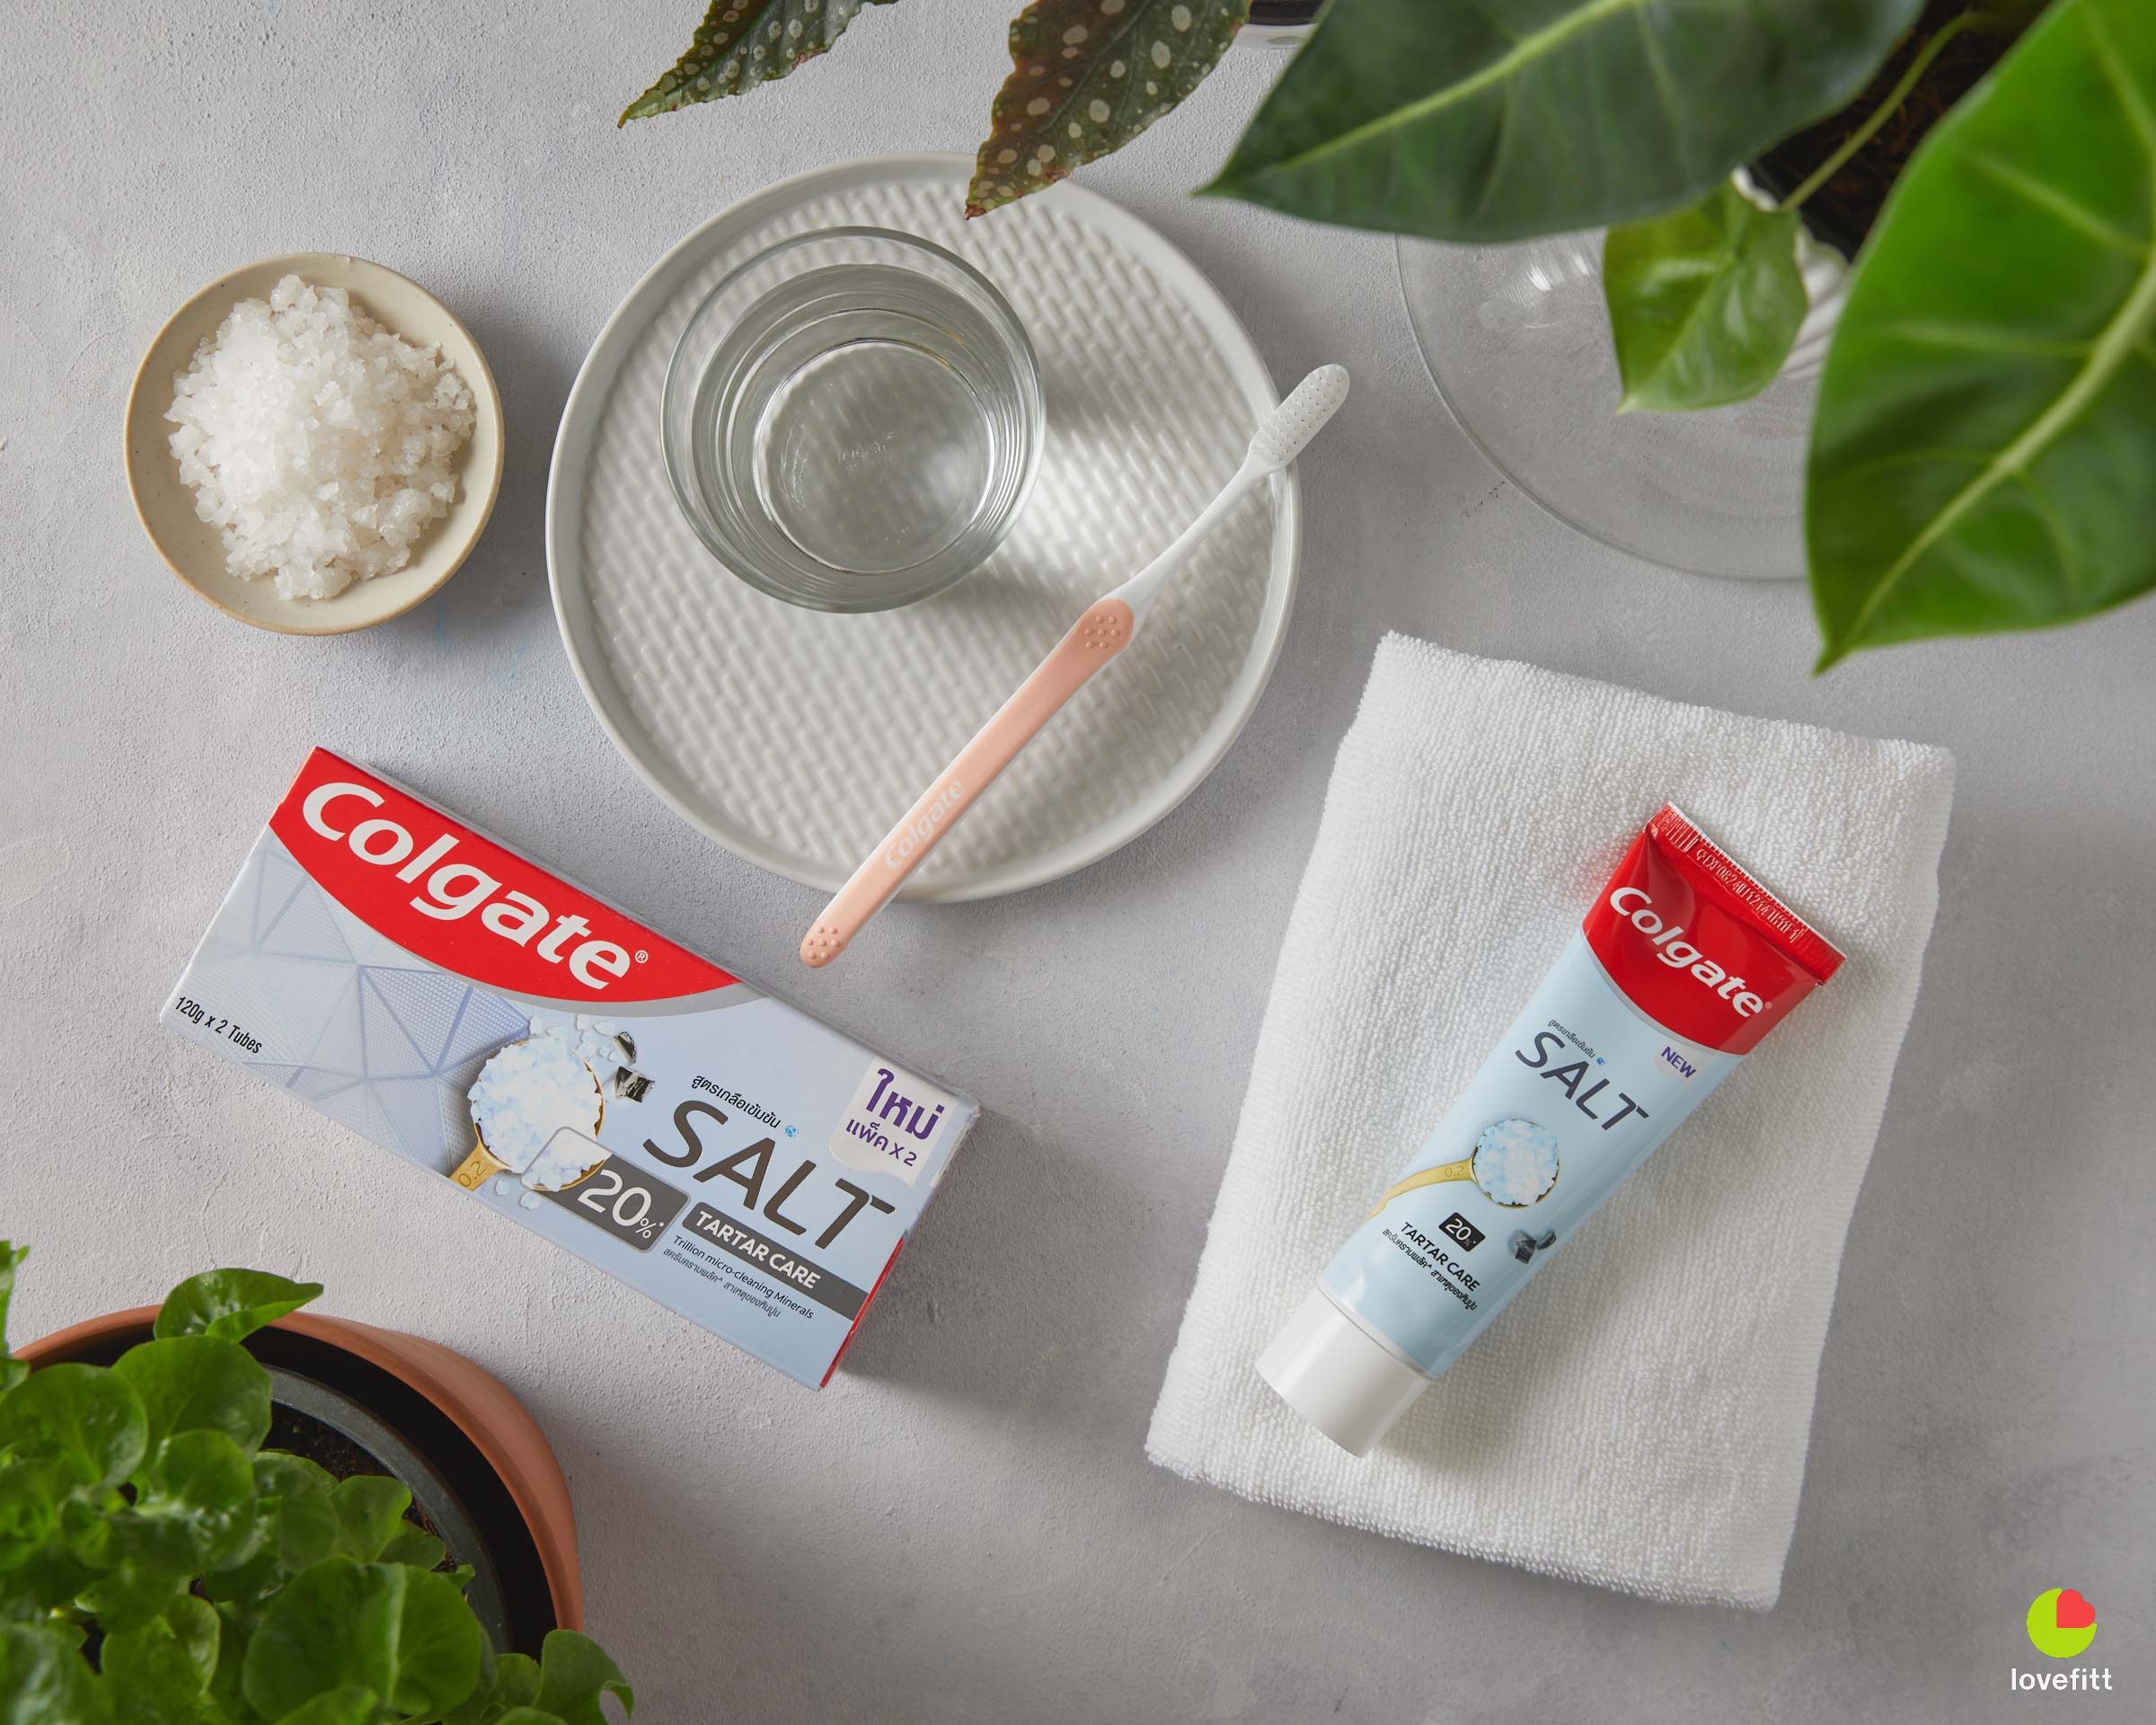 ยาสีฟันสูตรเกลือ Colgate Salt TARTAR Care ไม่เค็มจนเกินไป กลิ่นหอมเย็น สดชื่น ลดปัญหาคราบหินปูน และกลิ่นปาก